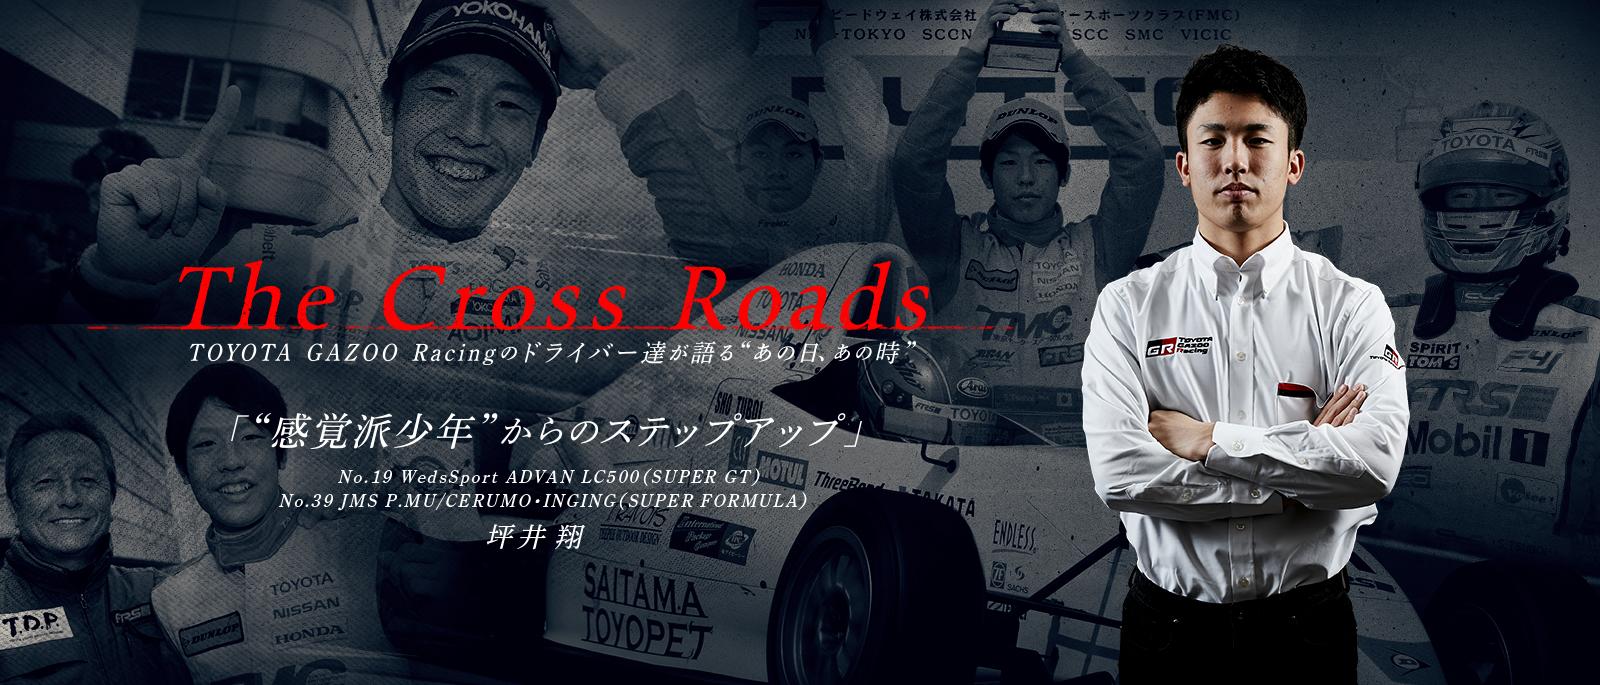 坪井 翔「感覚派少年からのステップアップ」 | The Cross Roads 〜TOYOTA GAZOO Racingのドライバーたちが語るあの日、あの時〜